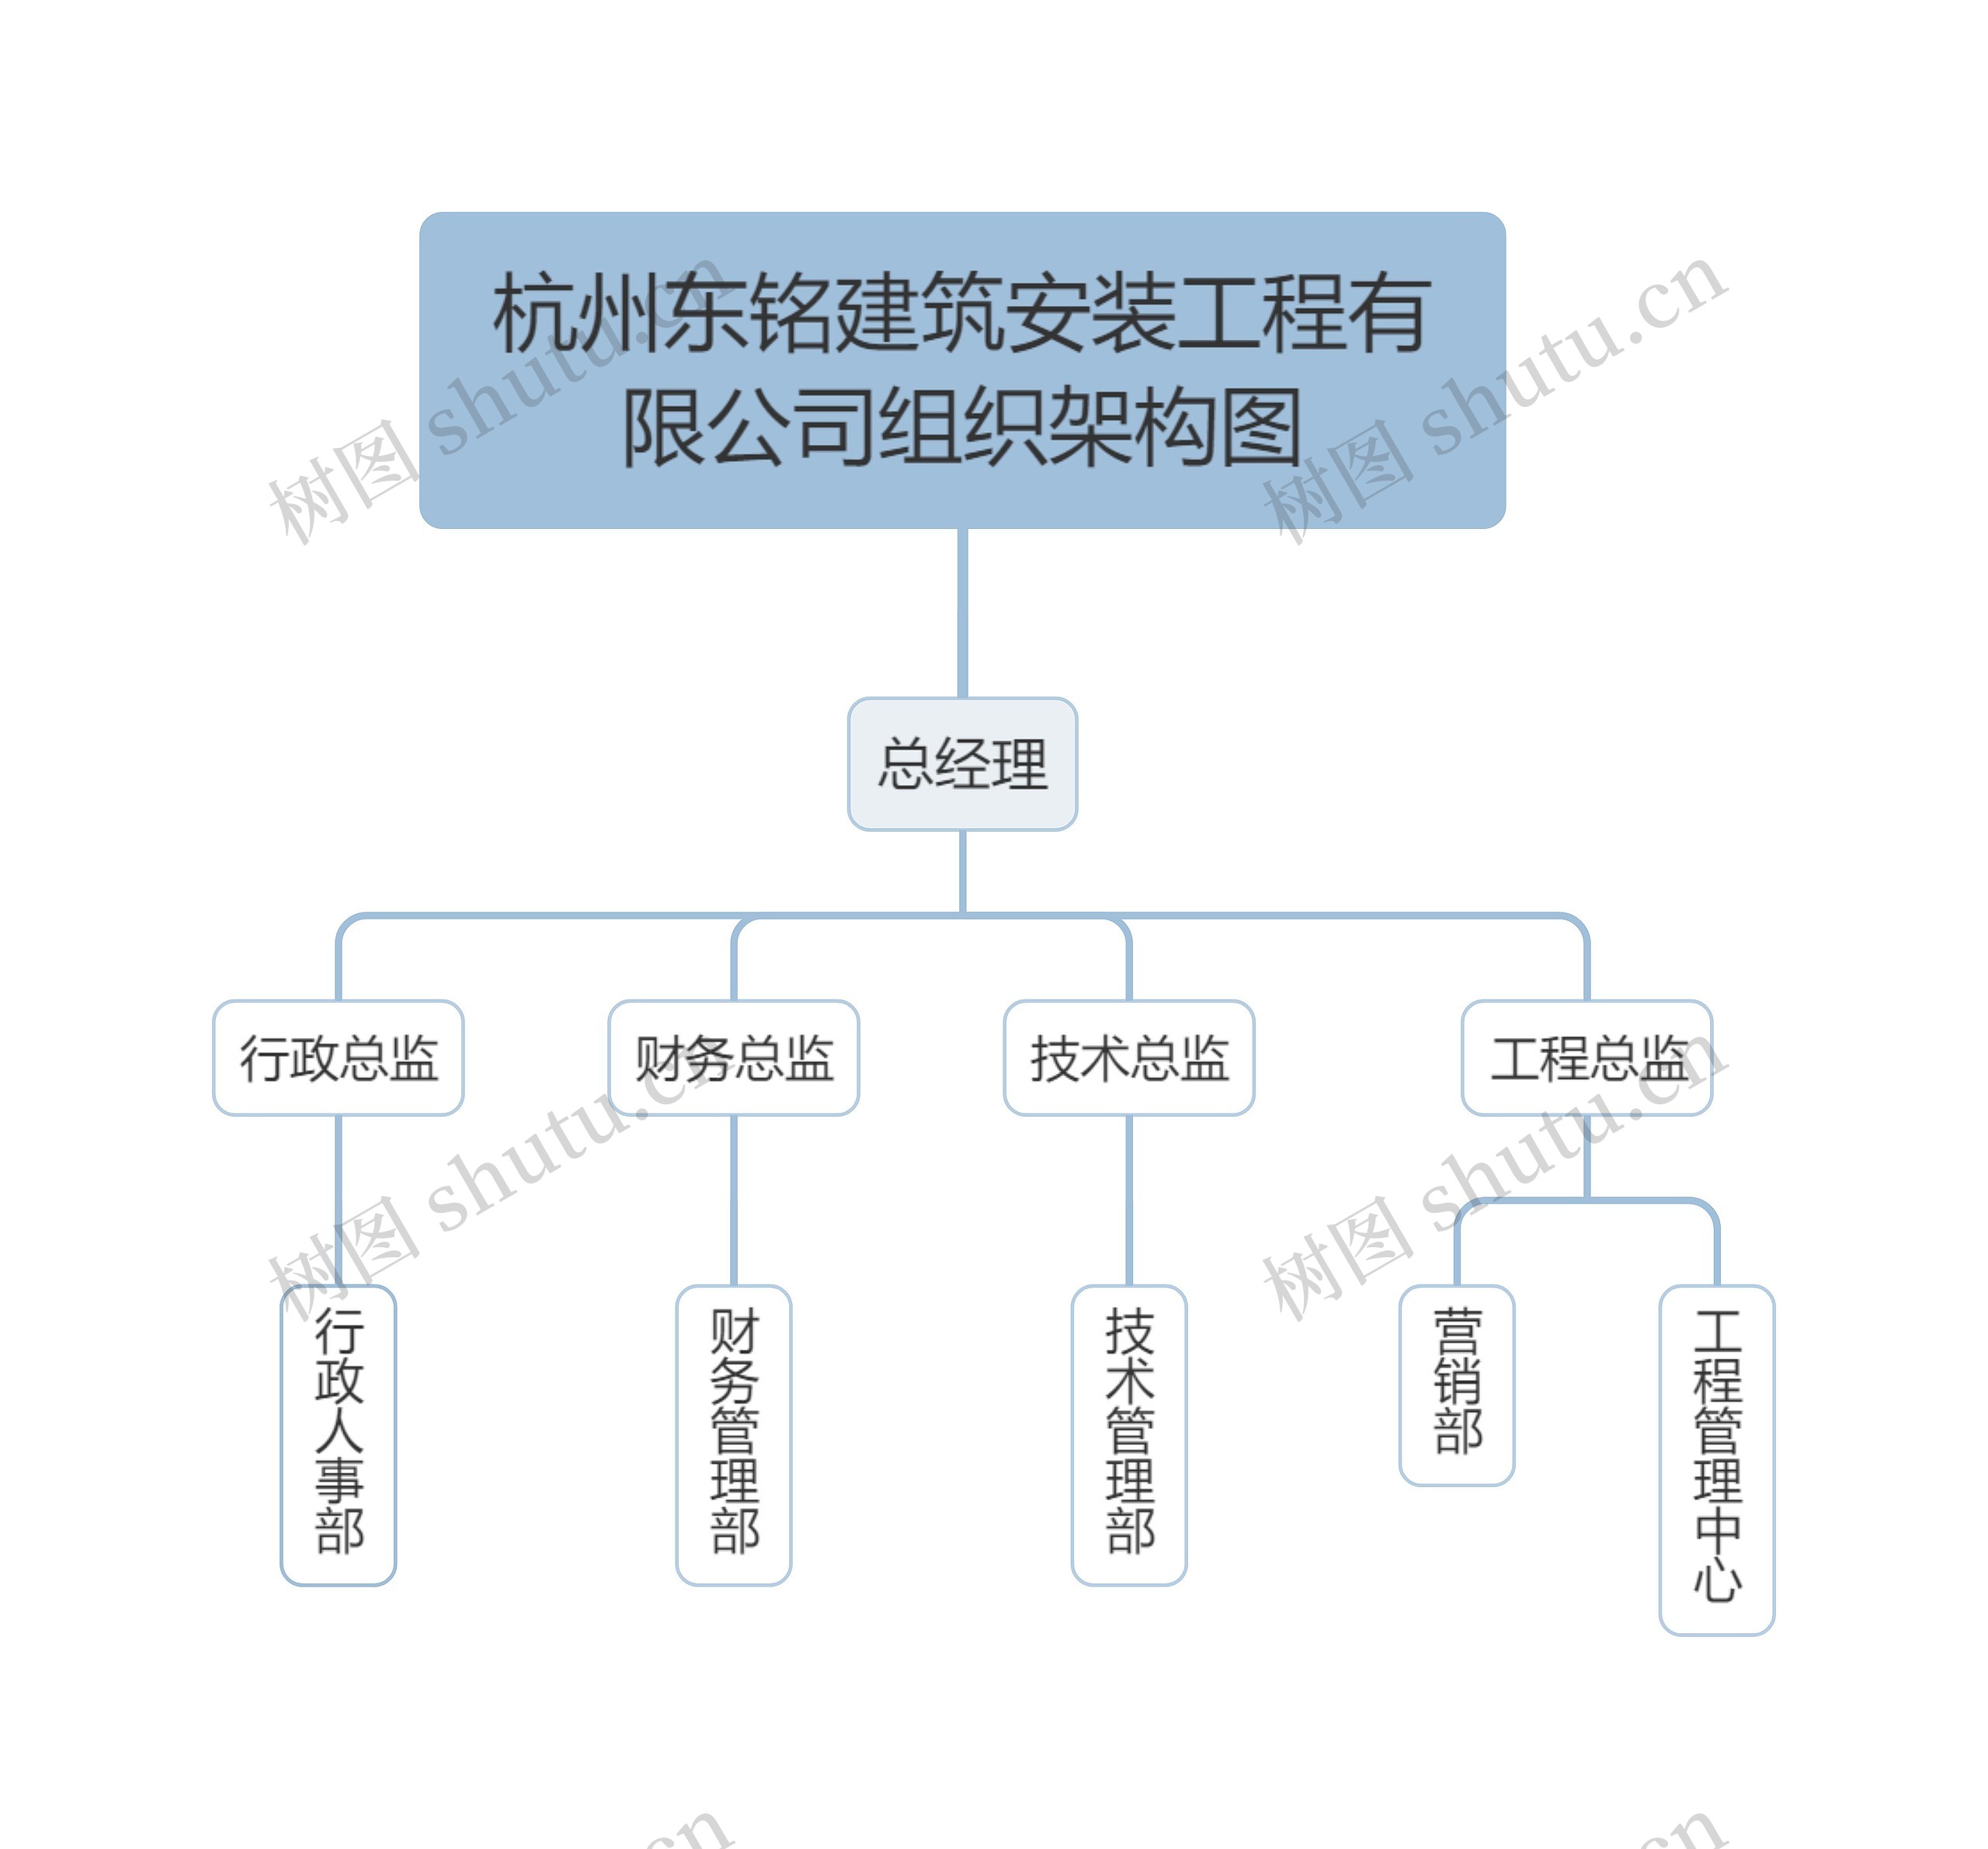 杭州东铭建筑安装工程有限公司组织架构图思维导图